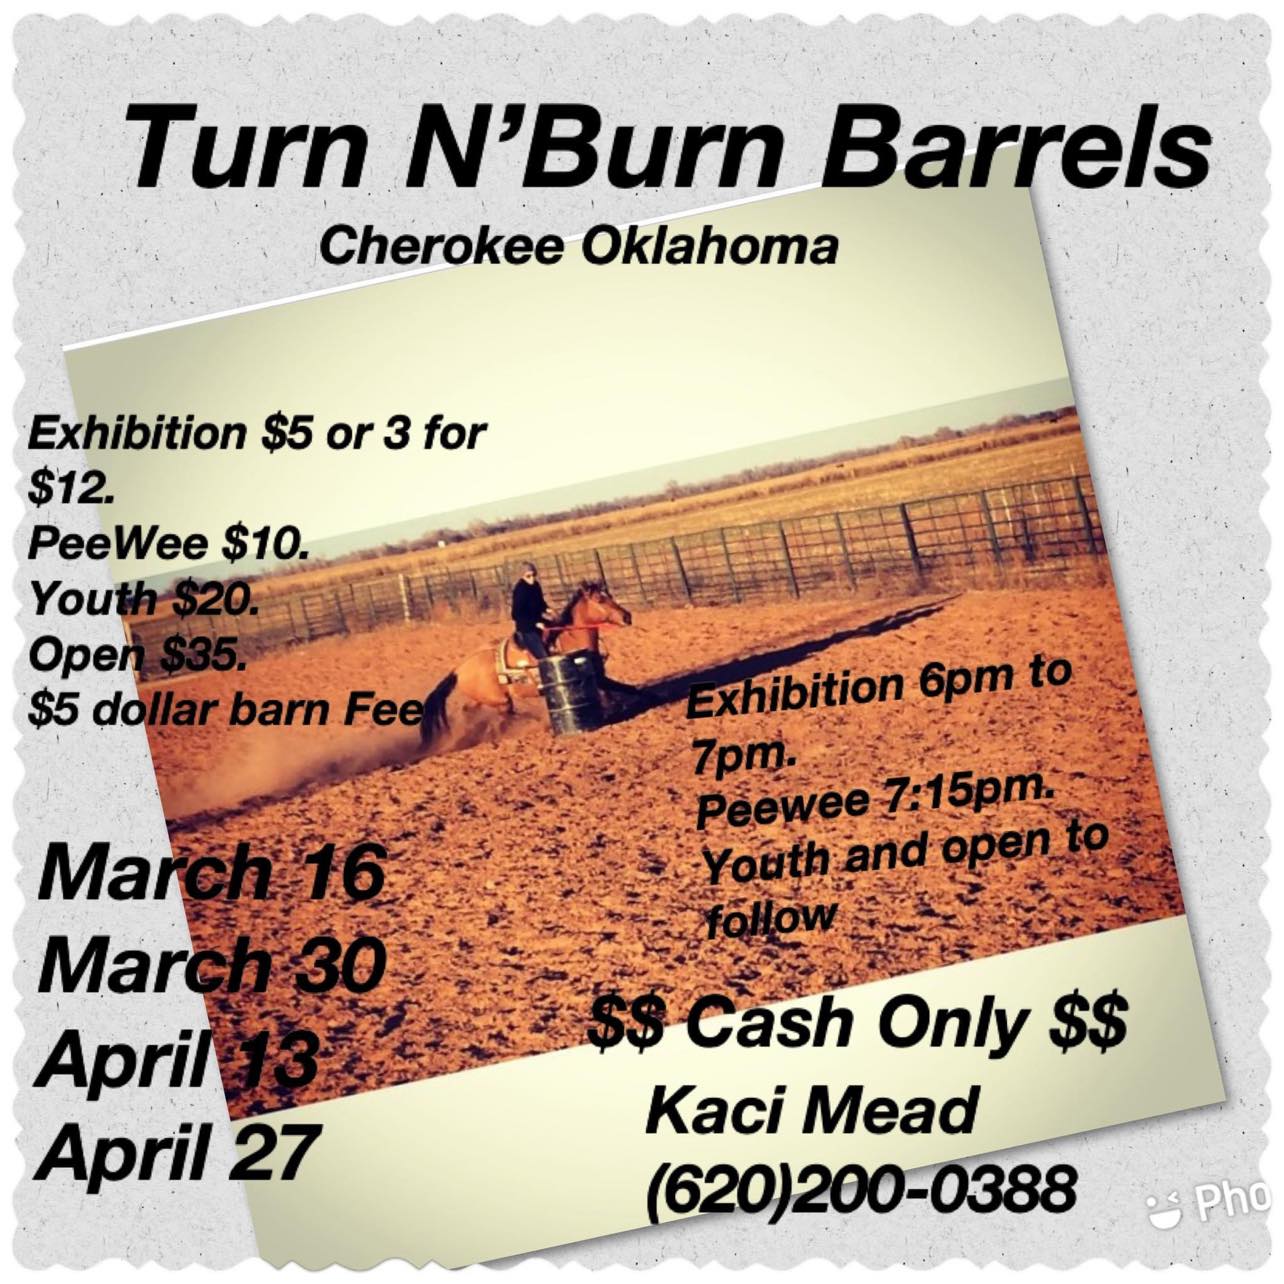 Turn N" Burn Barrels